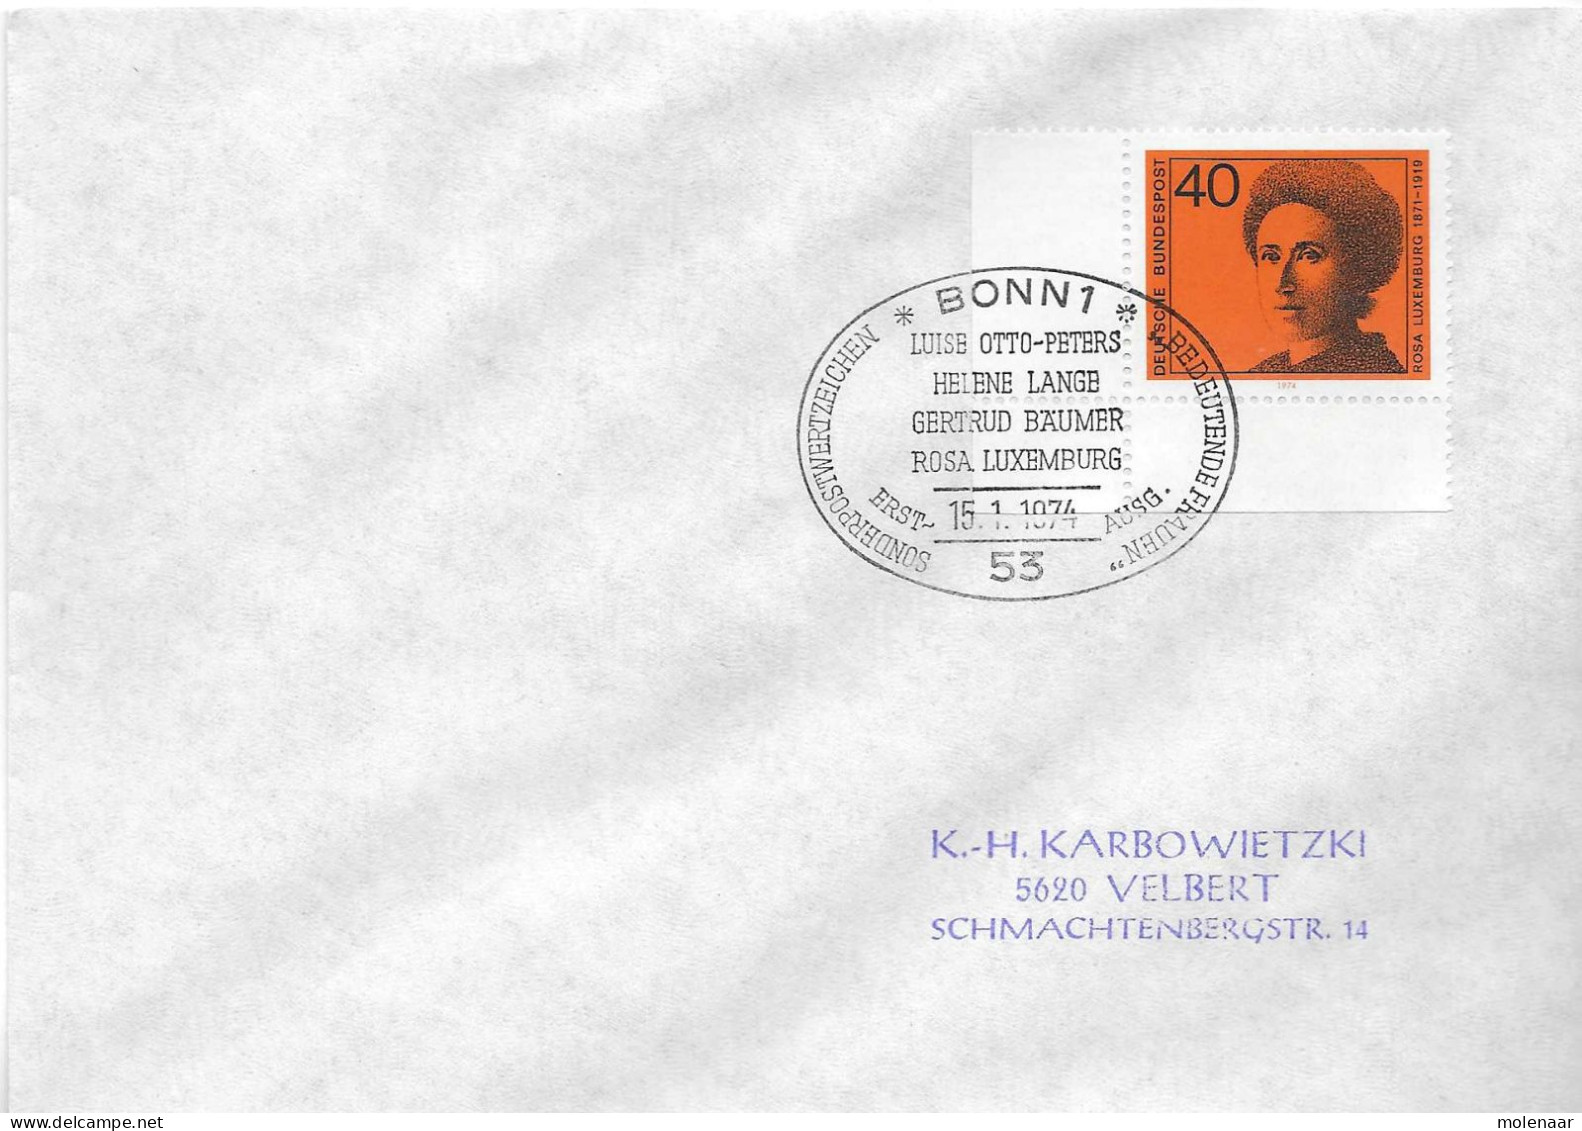 Postzegels > Europa > Duitsland > West-Duitsland > 1970-1979 > Brief Met No. 794 (17381) - Storia Postale